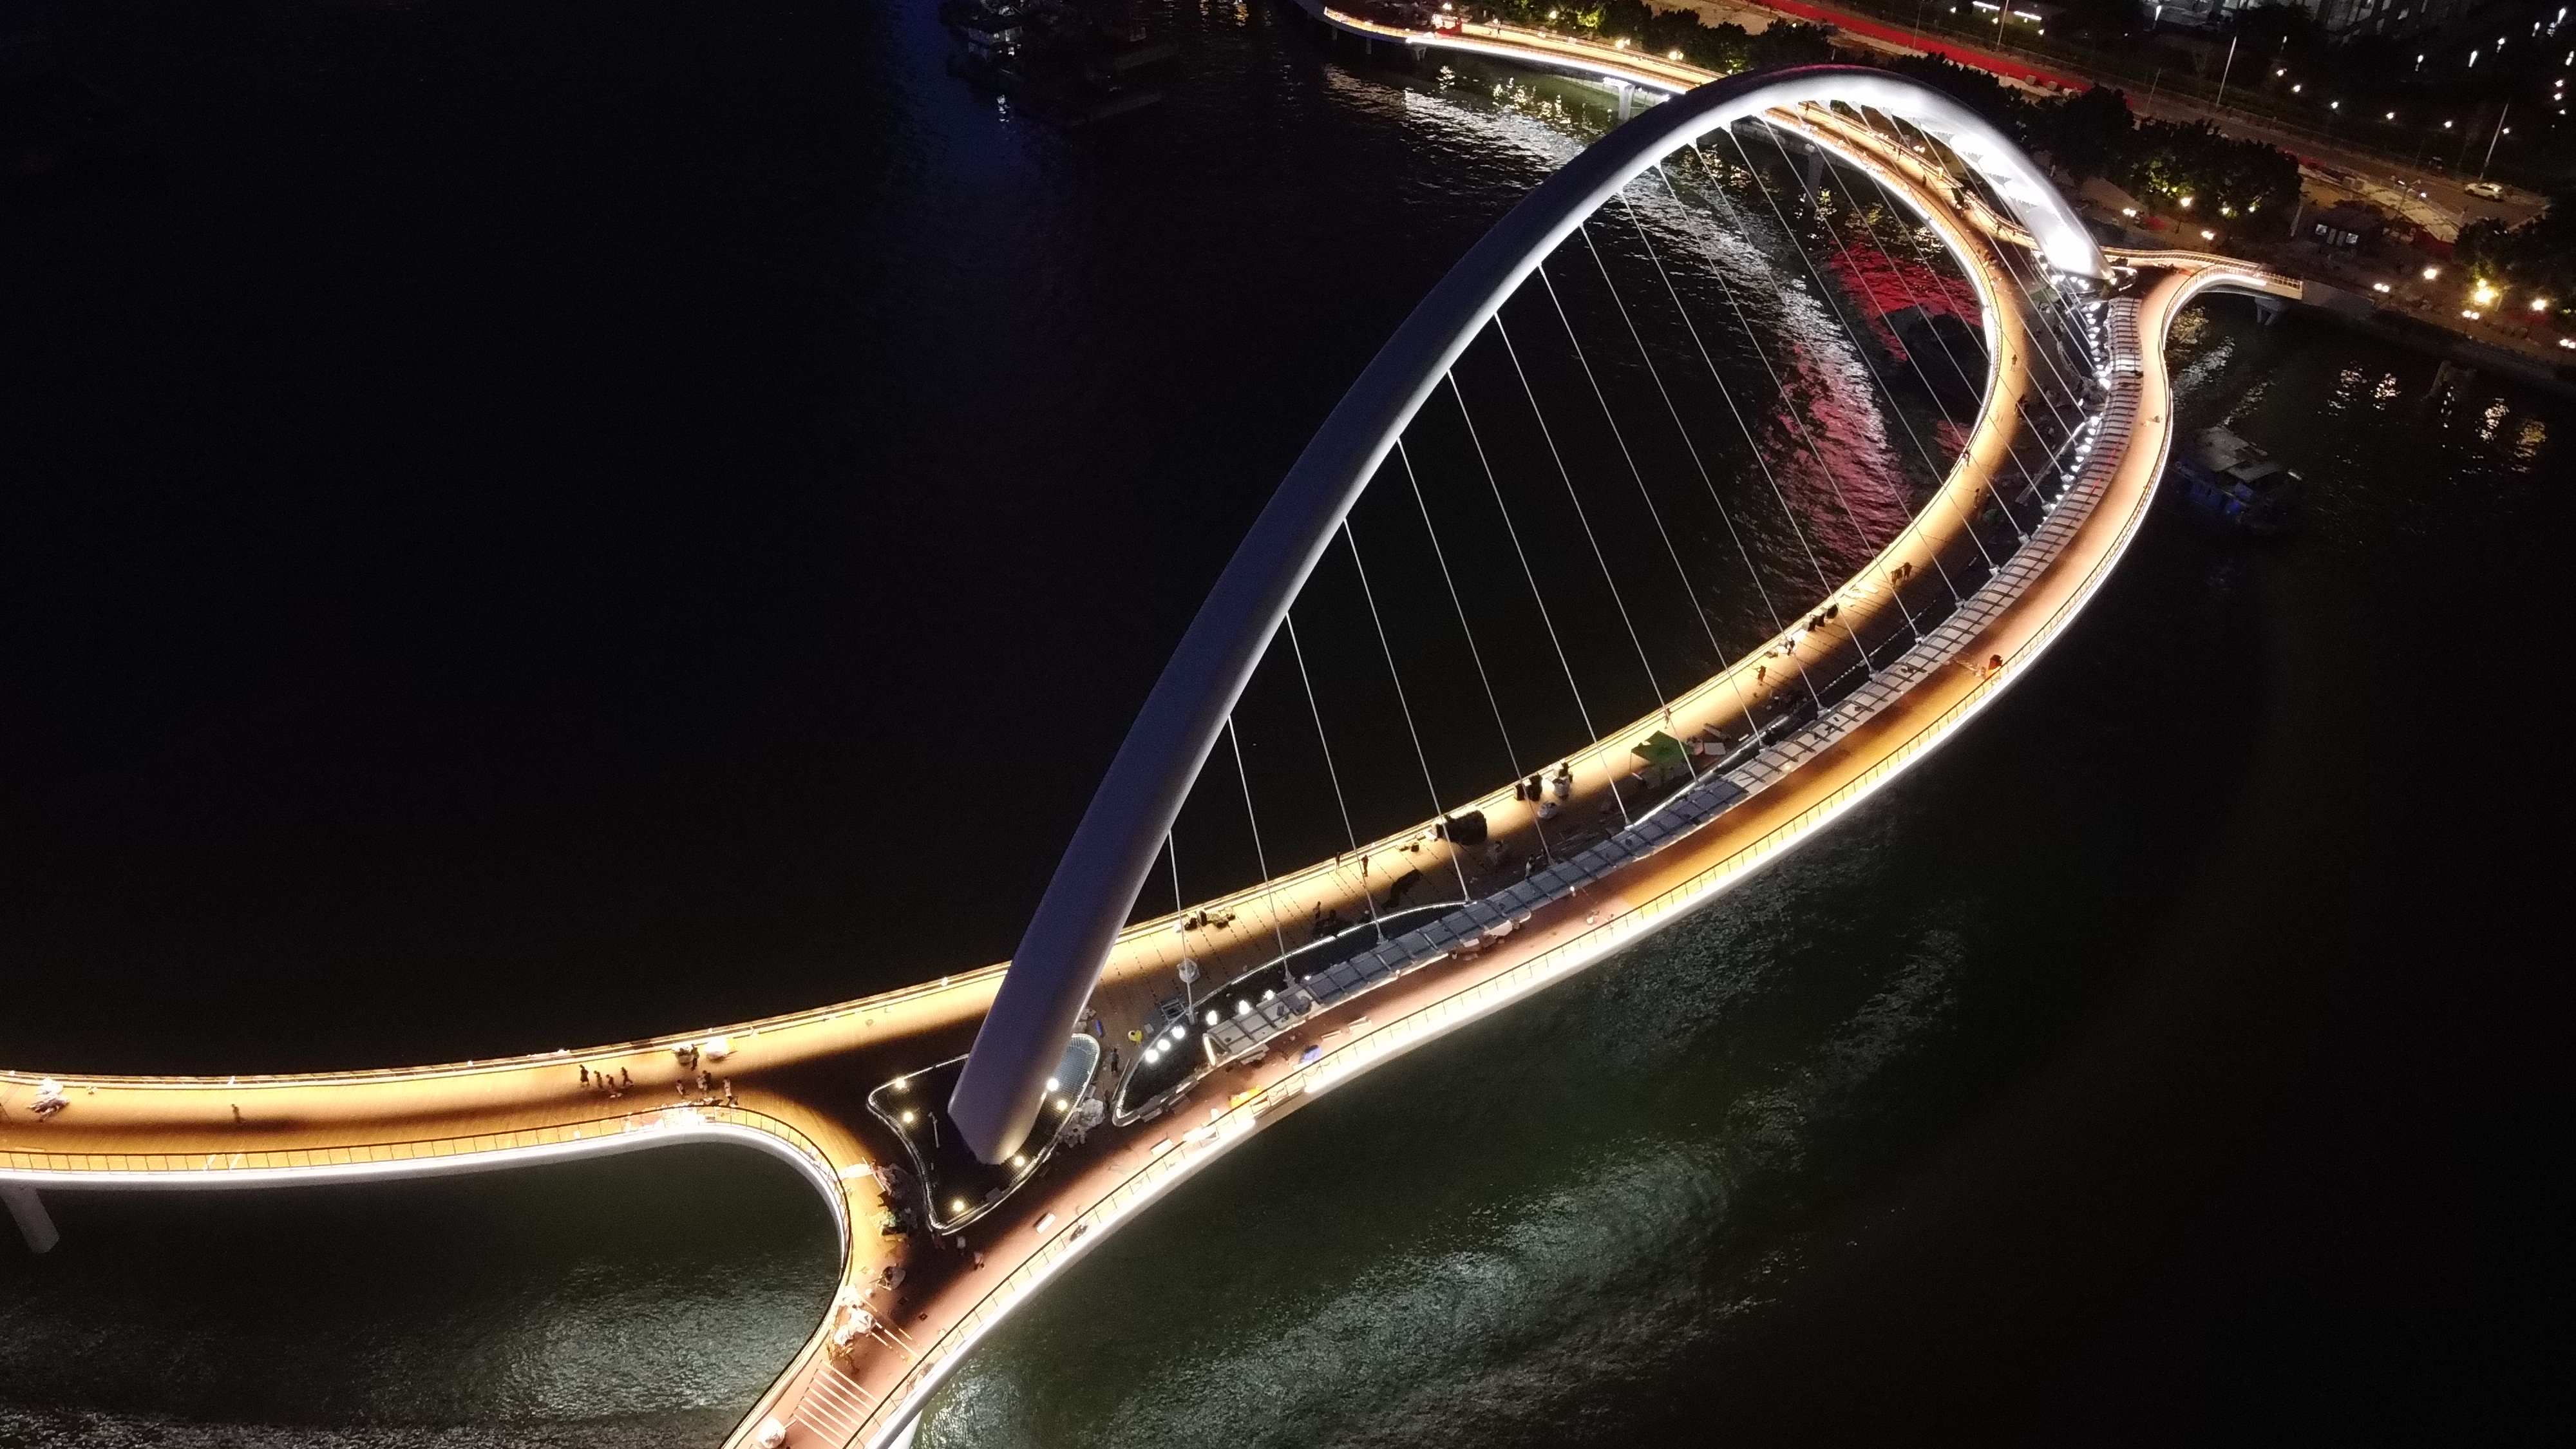 广州海珠桥夜景图片